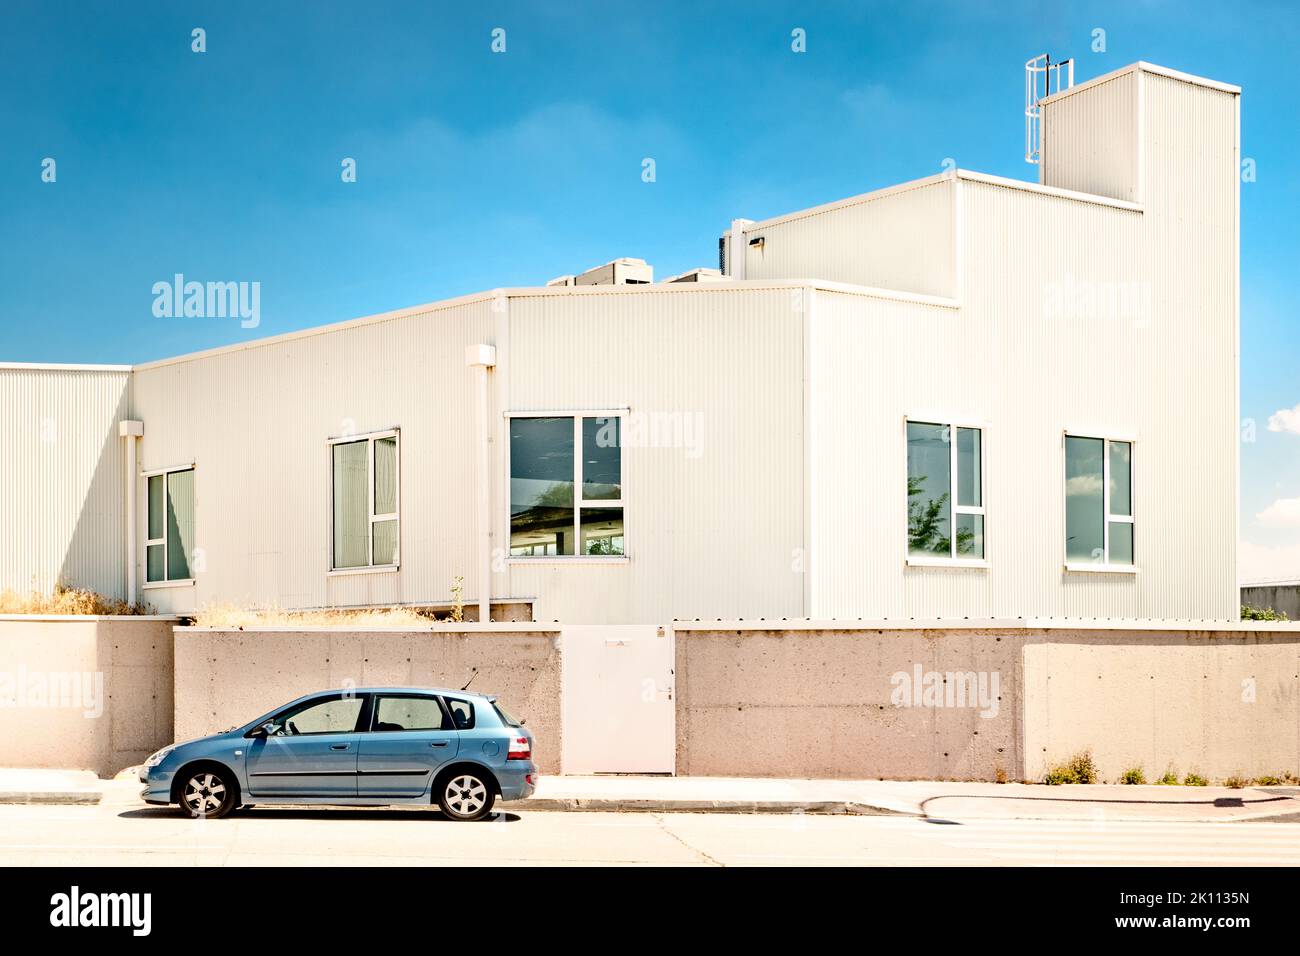 Fassade eines Industrielagers mit weißem Dach, Zementwand, Fenstern und geparktem Auto an einem sonnigen Tag Stockfoto